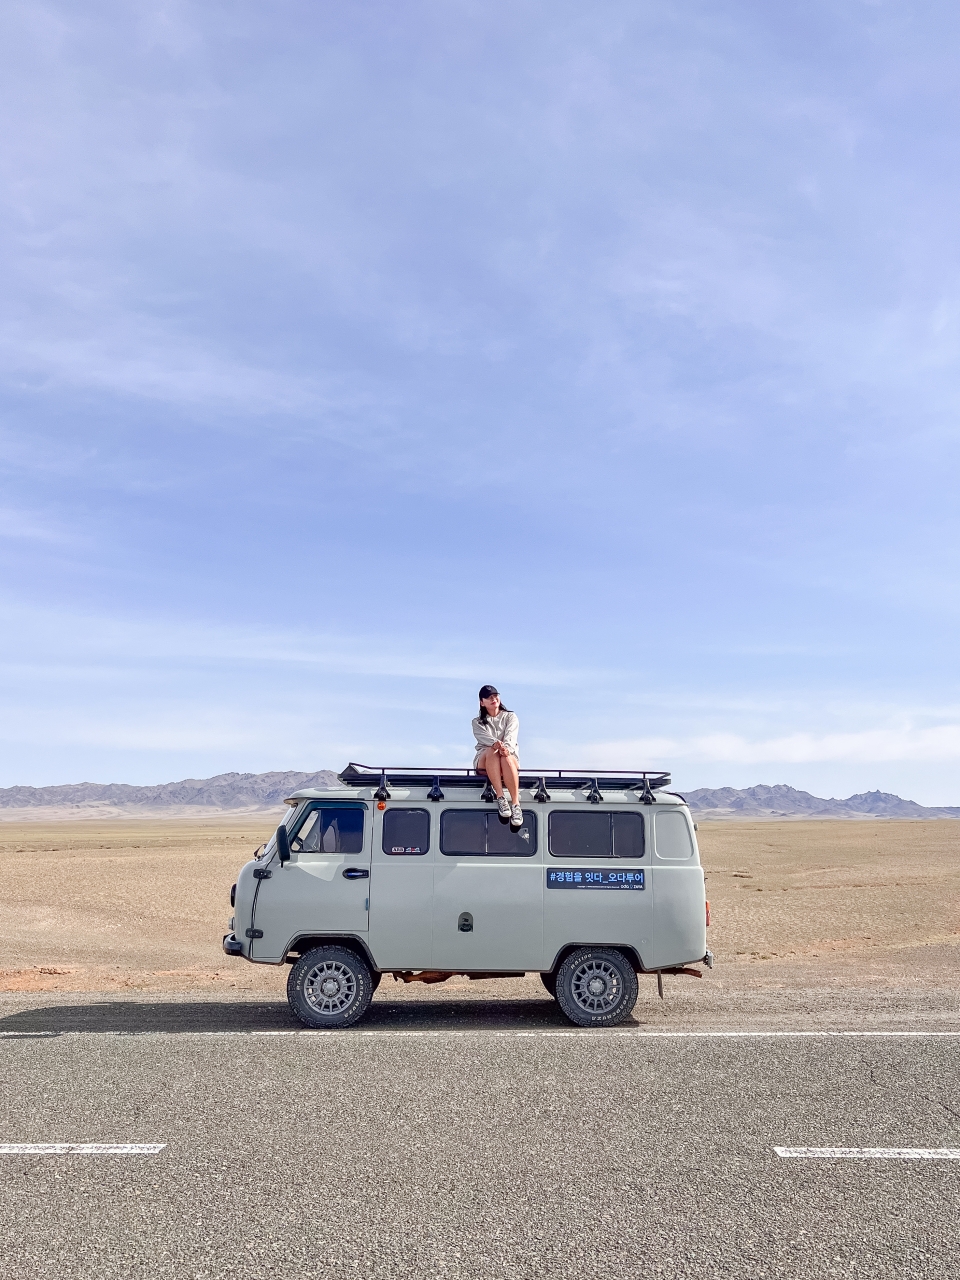 몽골 자유여행 고비사막 코스 게르부터 음식까지 총정리